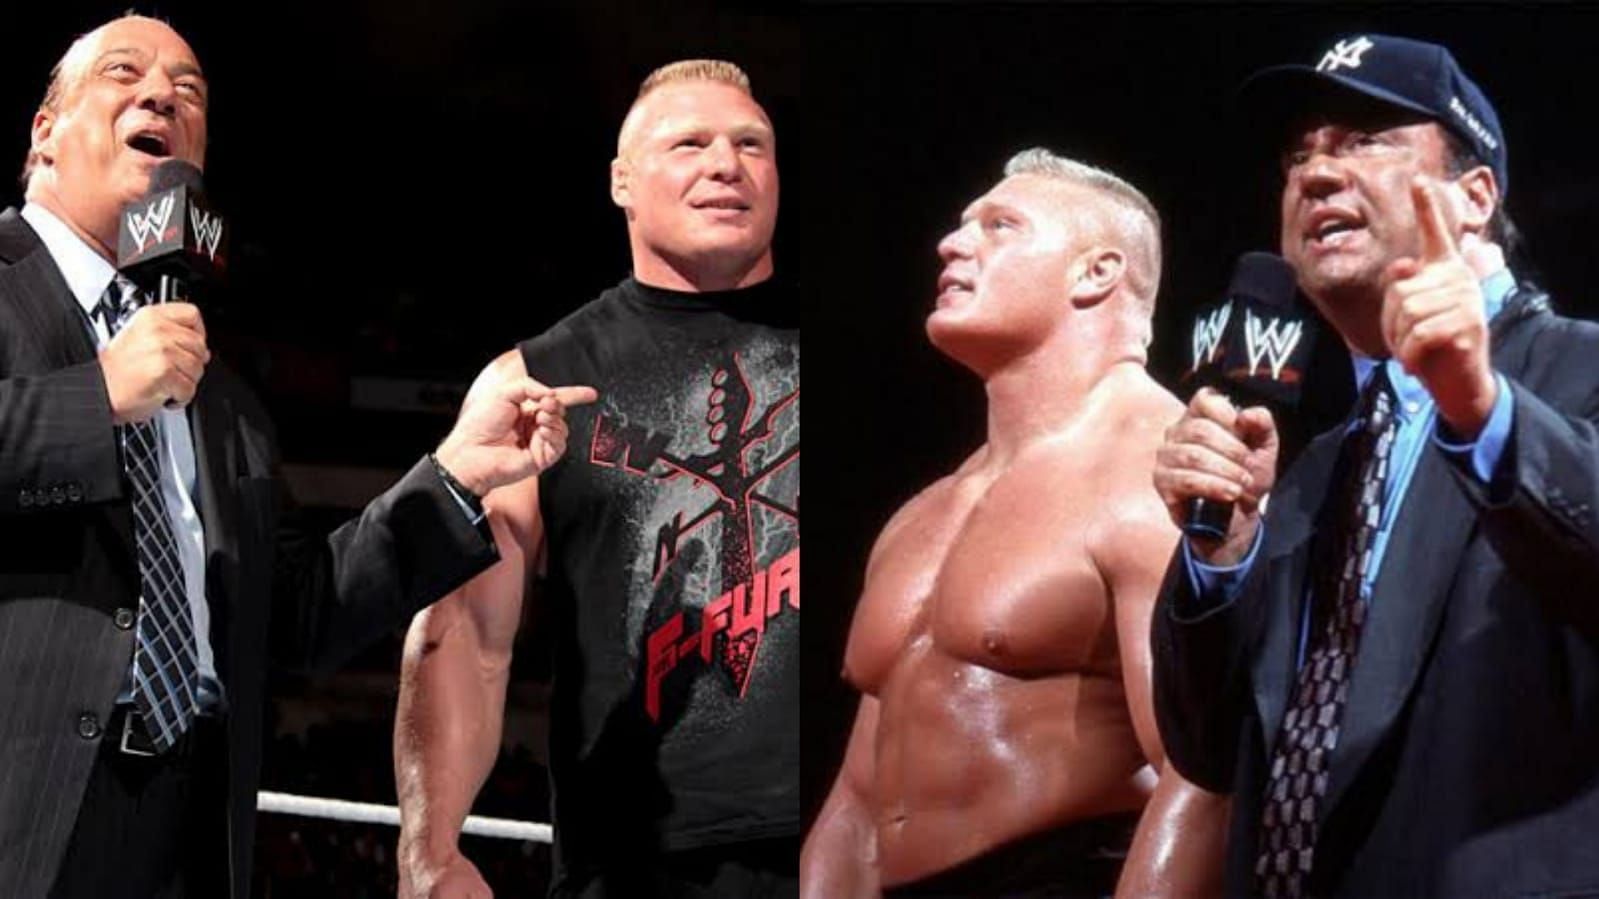 Brock Lesnar and Paul Heyman recruited several stars in Team Lesnar, including Matt Morgan